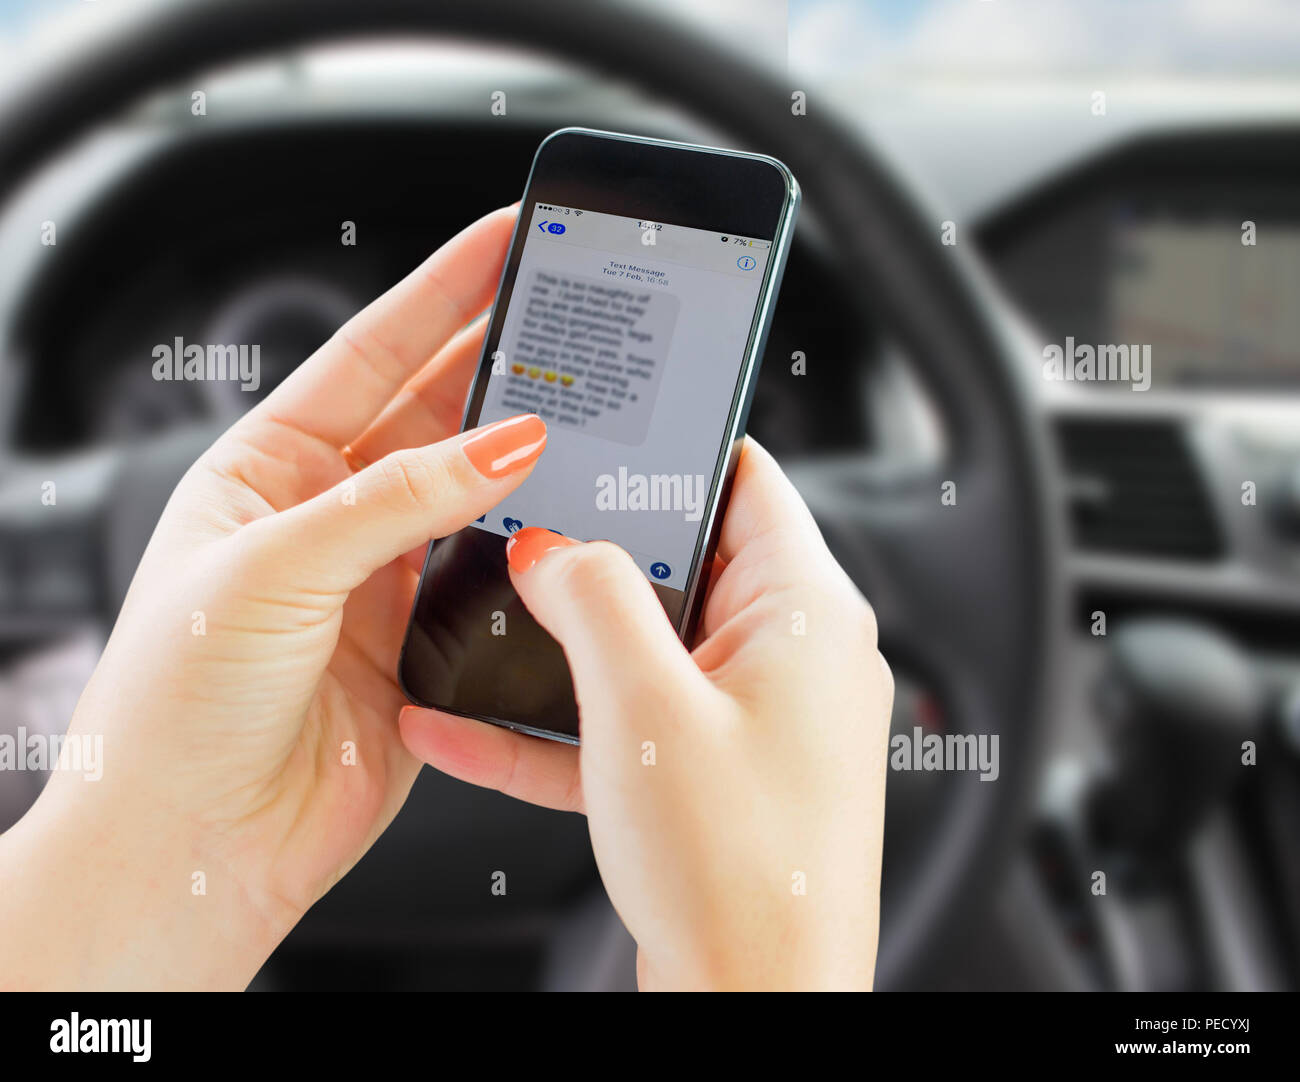 La donna gli sms sul cellulare durante la guida di un'auto. situazione pericolosa. Driver distratto dal cellulare. Foto Stock